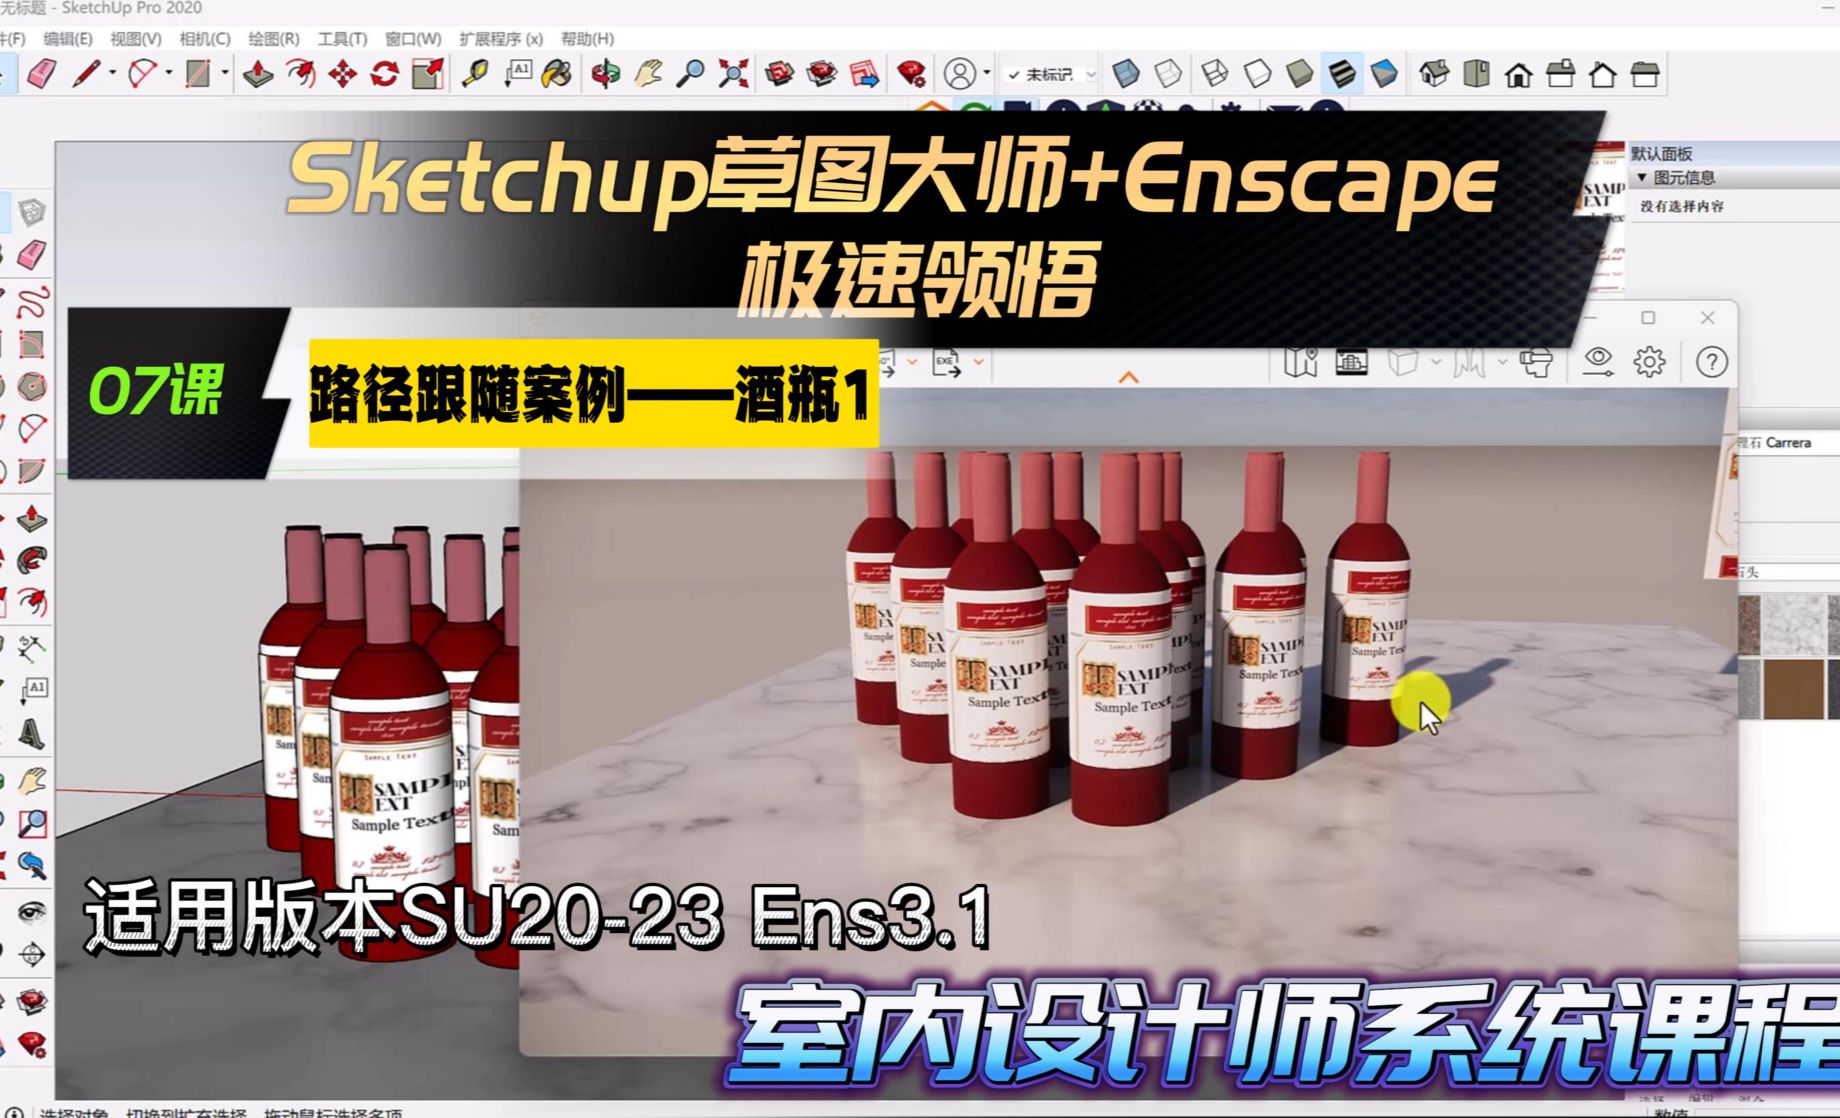 Sketchup+Enscape室内设计极速领悟-路径跟随案例《酒瓶》1